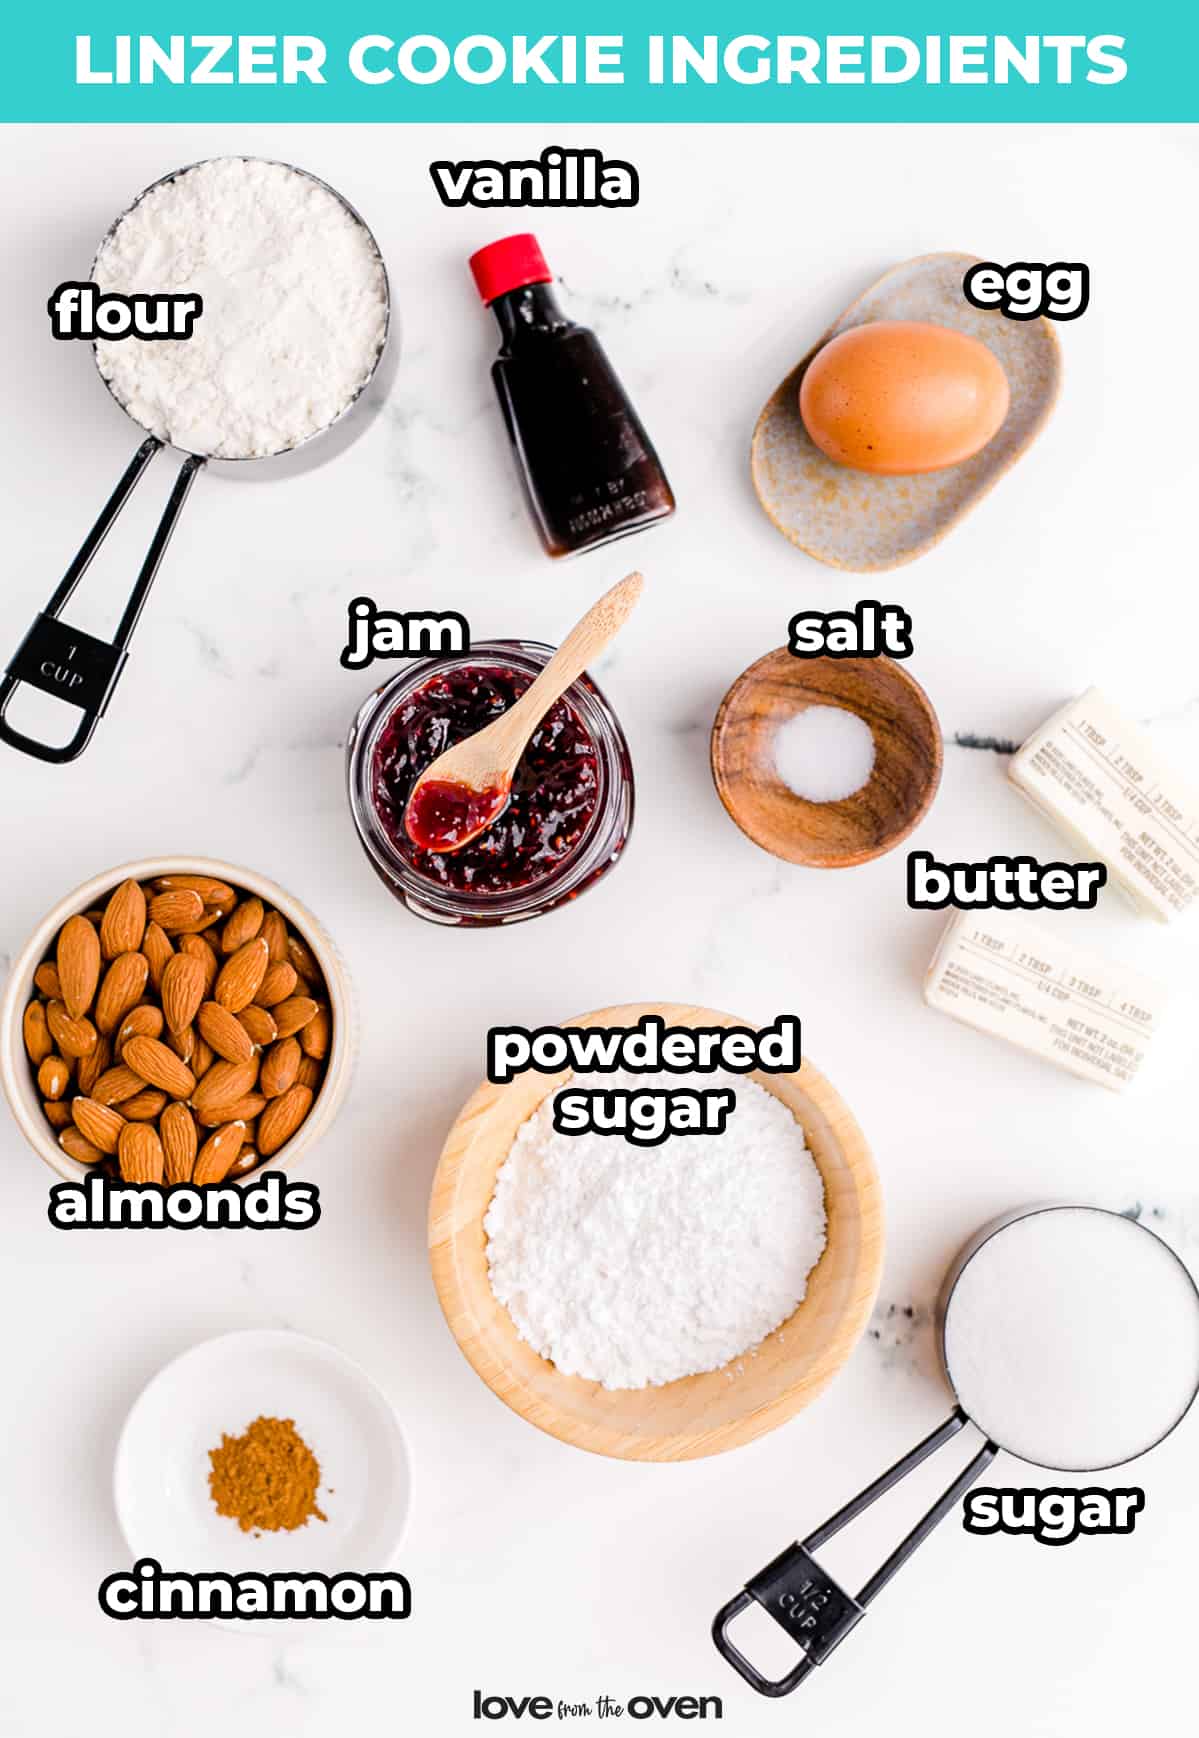 Ingredients for linzer cookies